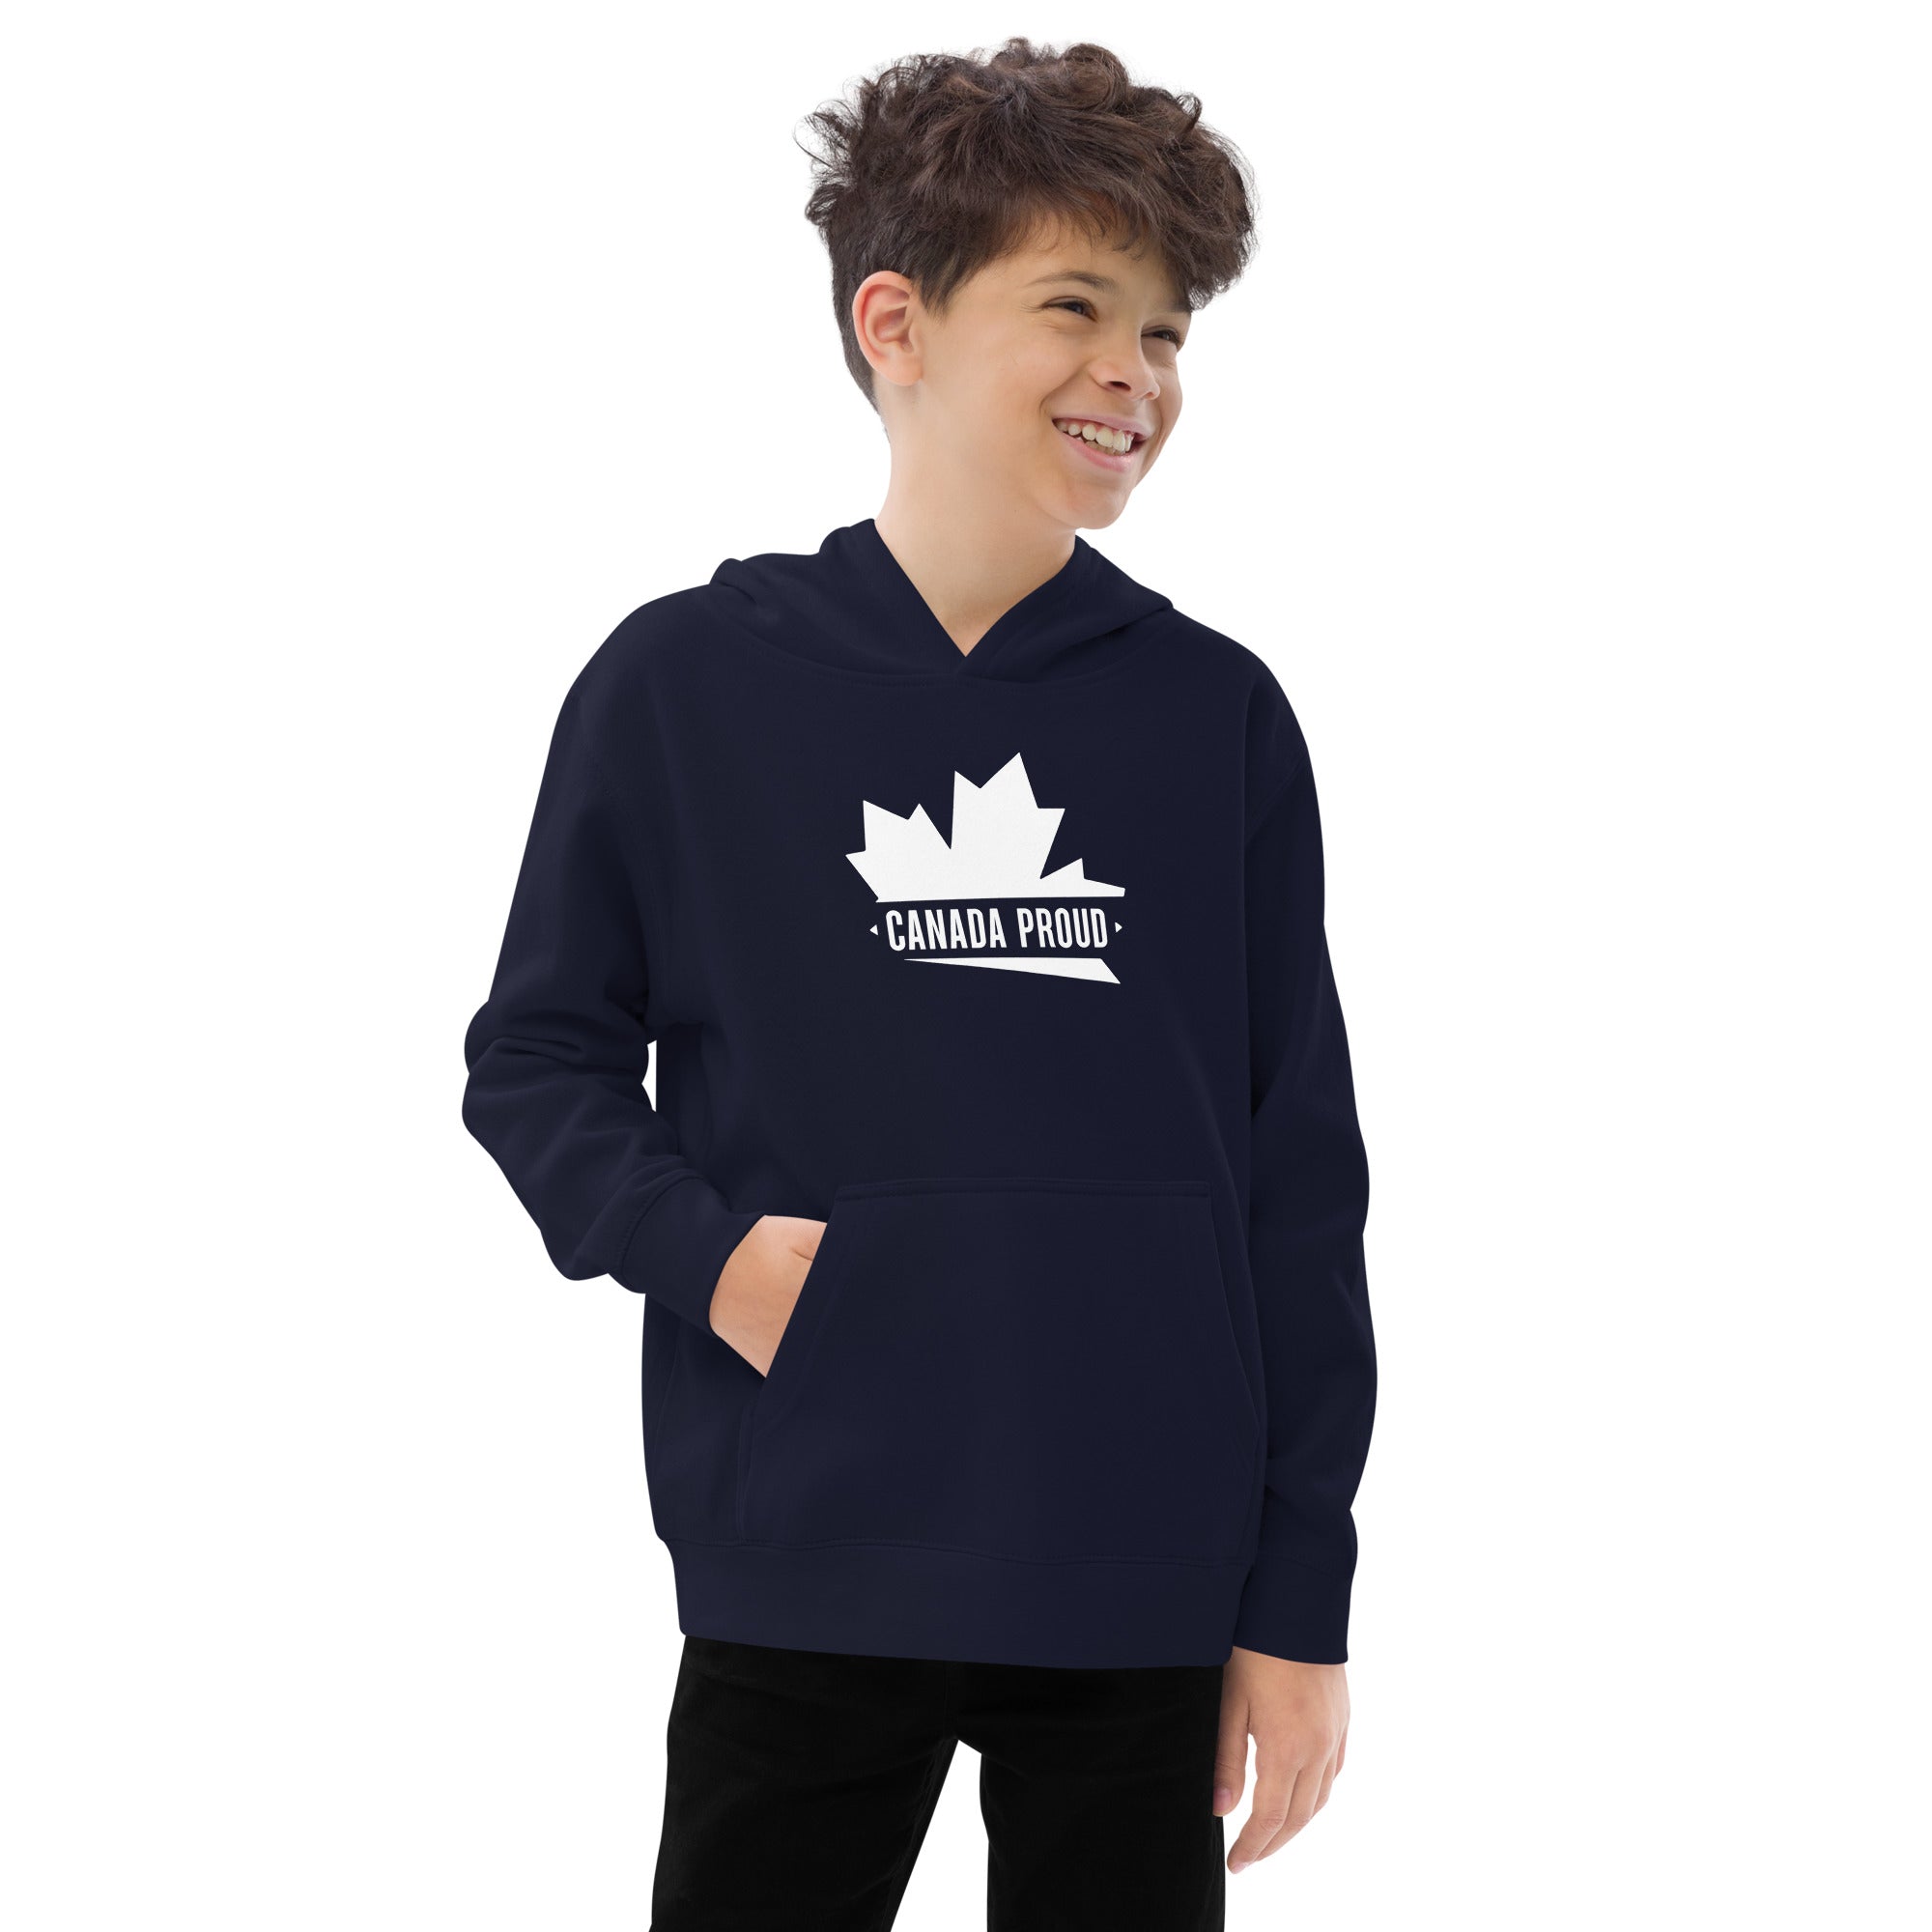 Youth Canada Proud fleece hoodie